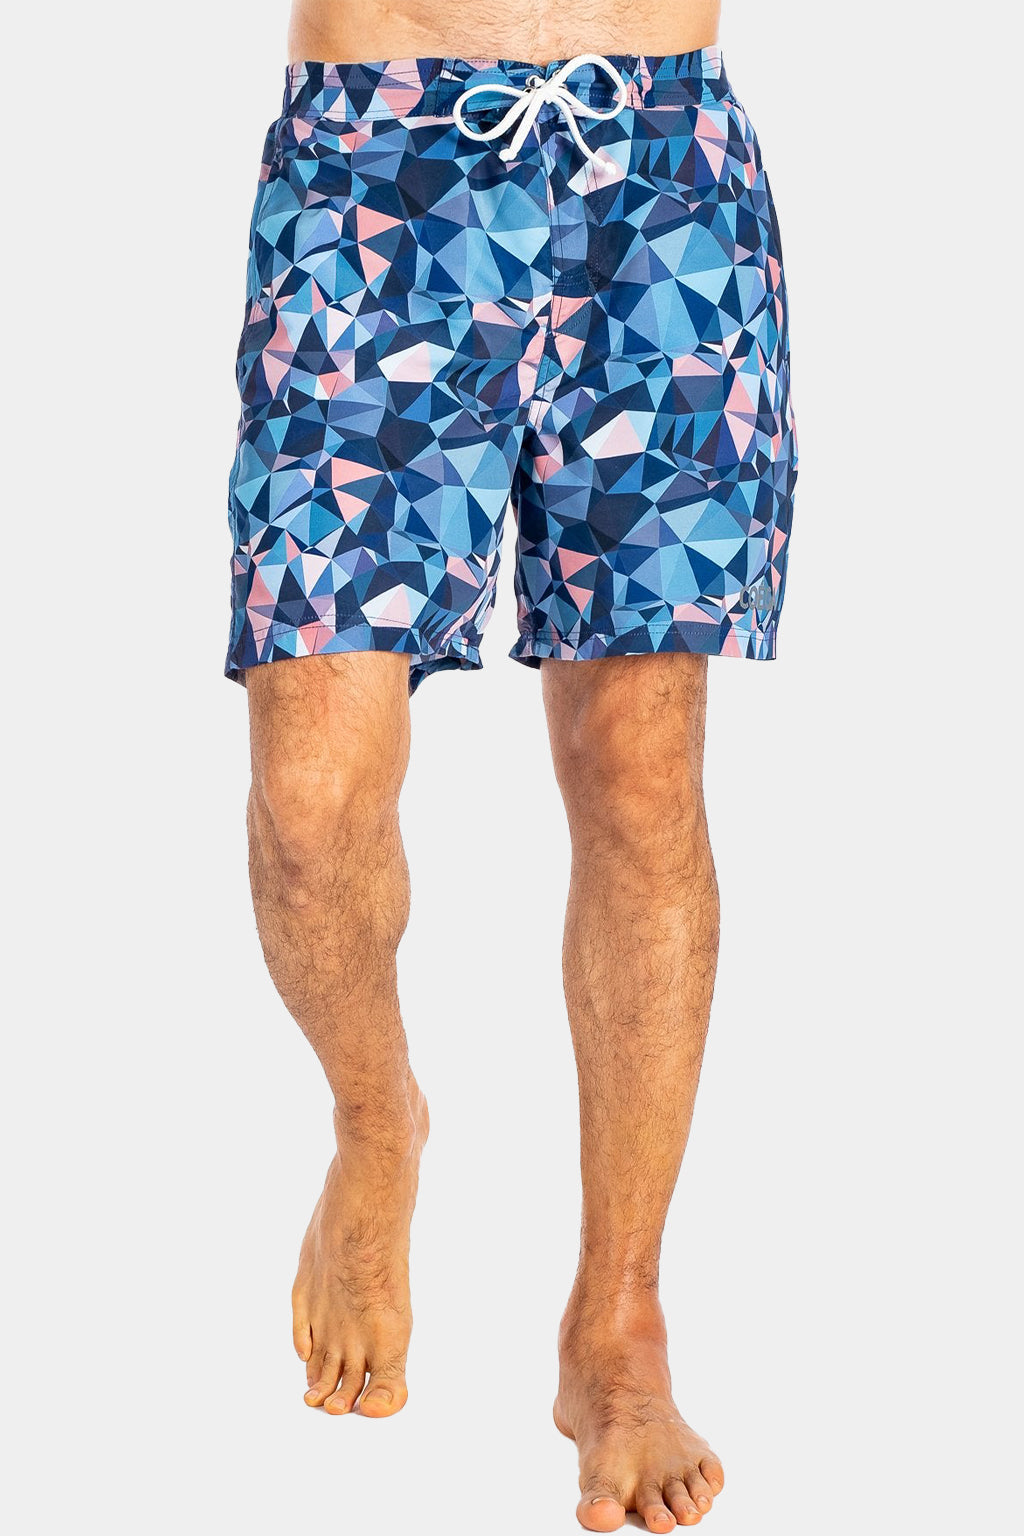 Coega - Mens Board Shorts